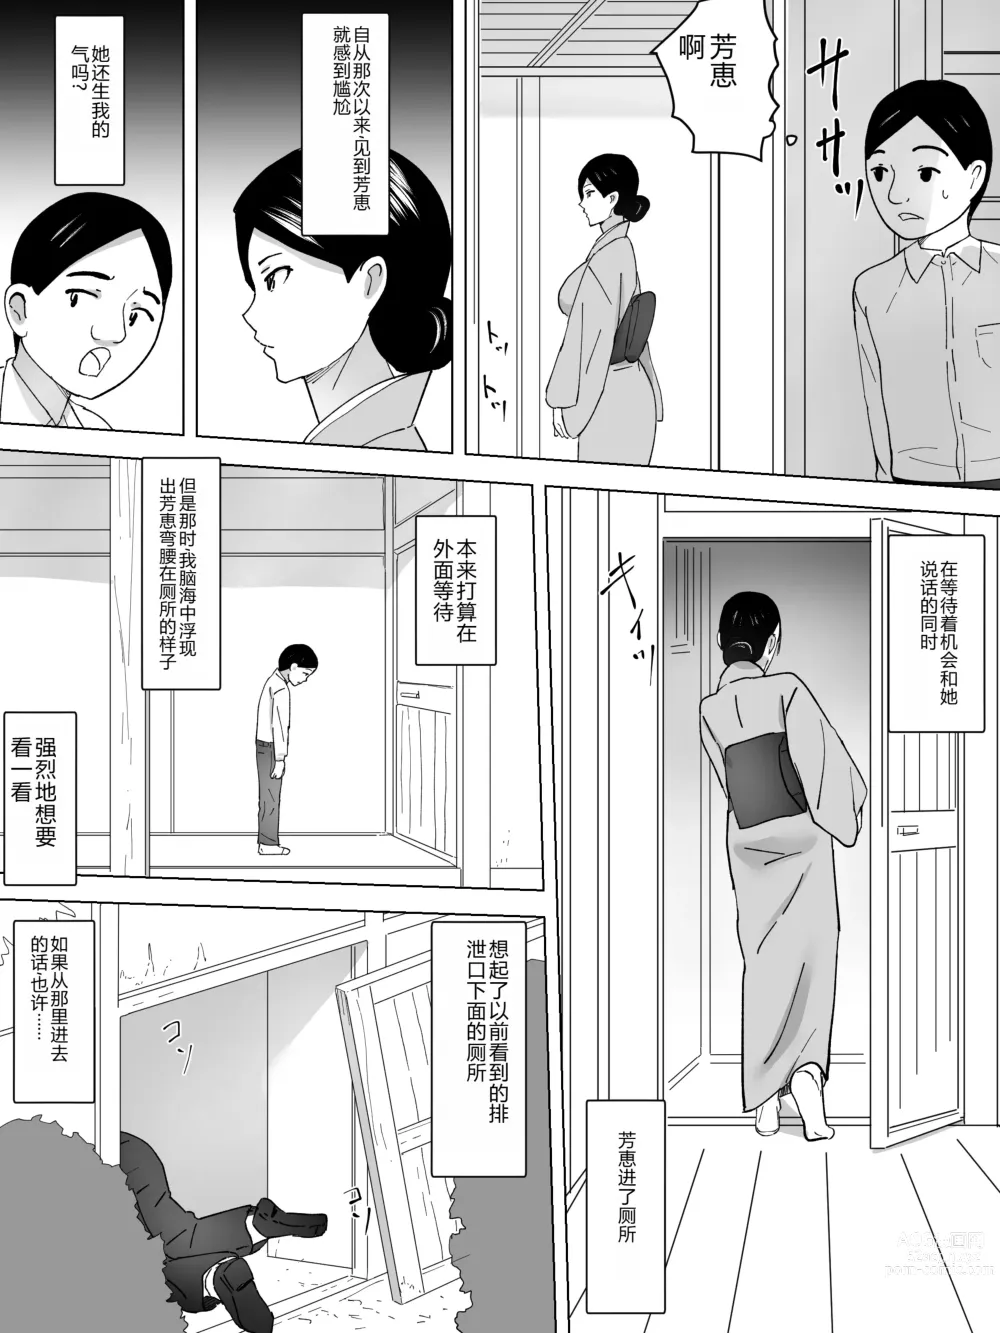 Page 7 of doujinshi Joshi Benjo no Uba